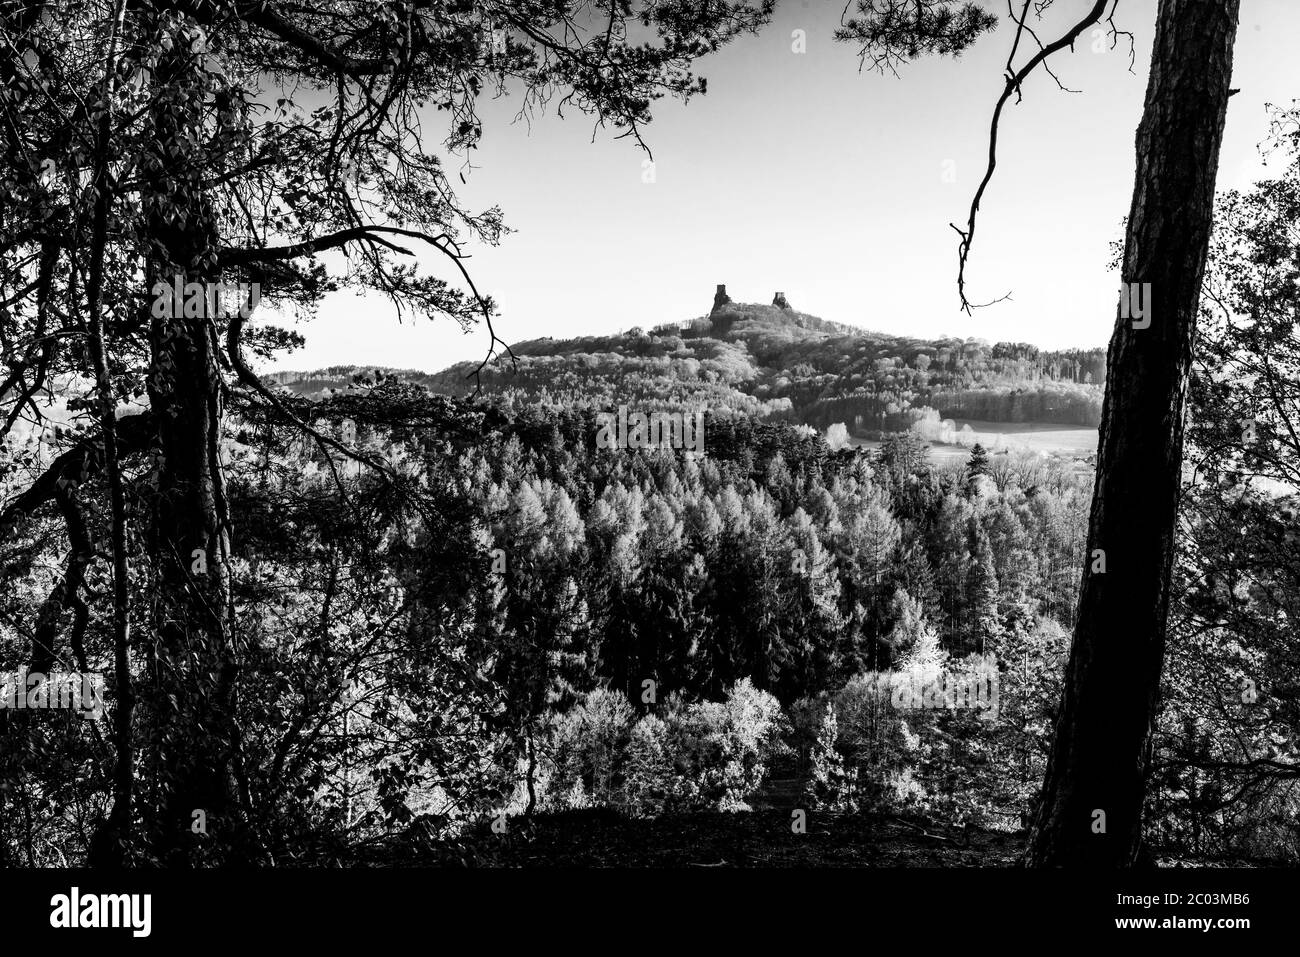 Les ruines du château de Trosky. Deux tours de l'ancien château médiéval sur la colline. Paysage de Paradis tchèque: Cesky raj, République tchèque. Image en noir et blanc. Banque D'Images